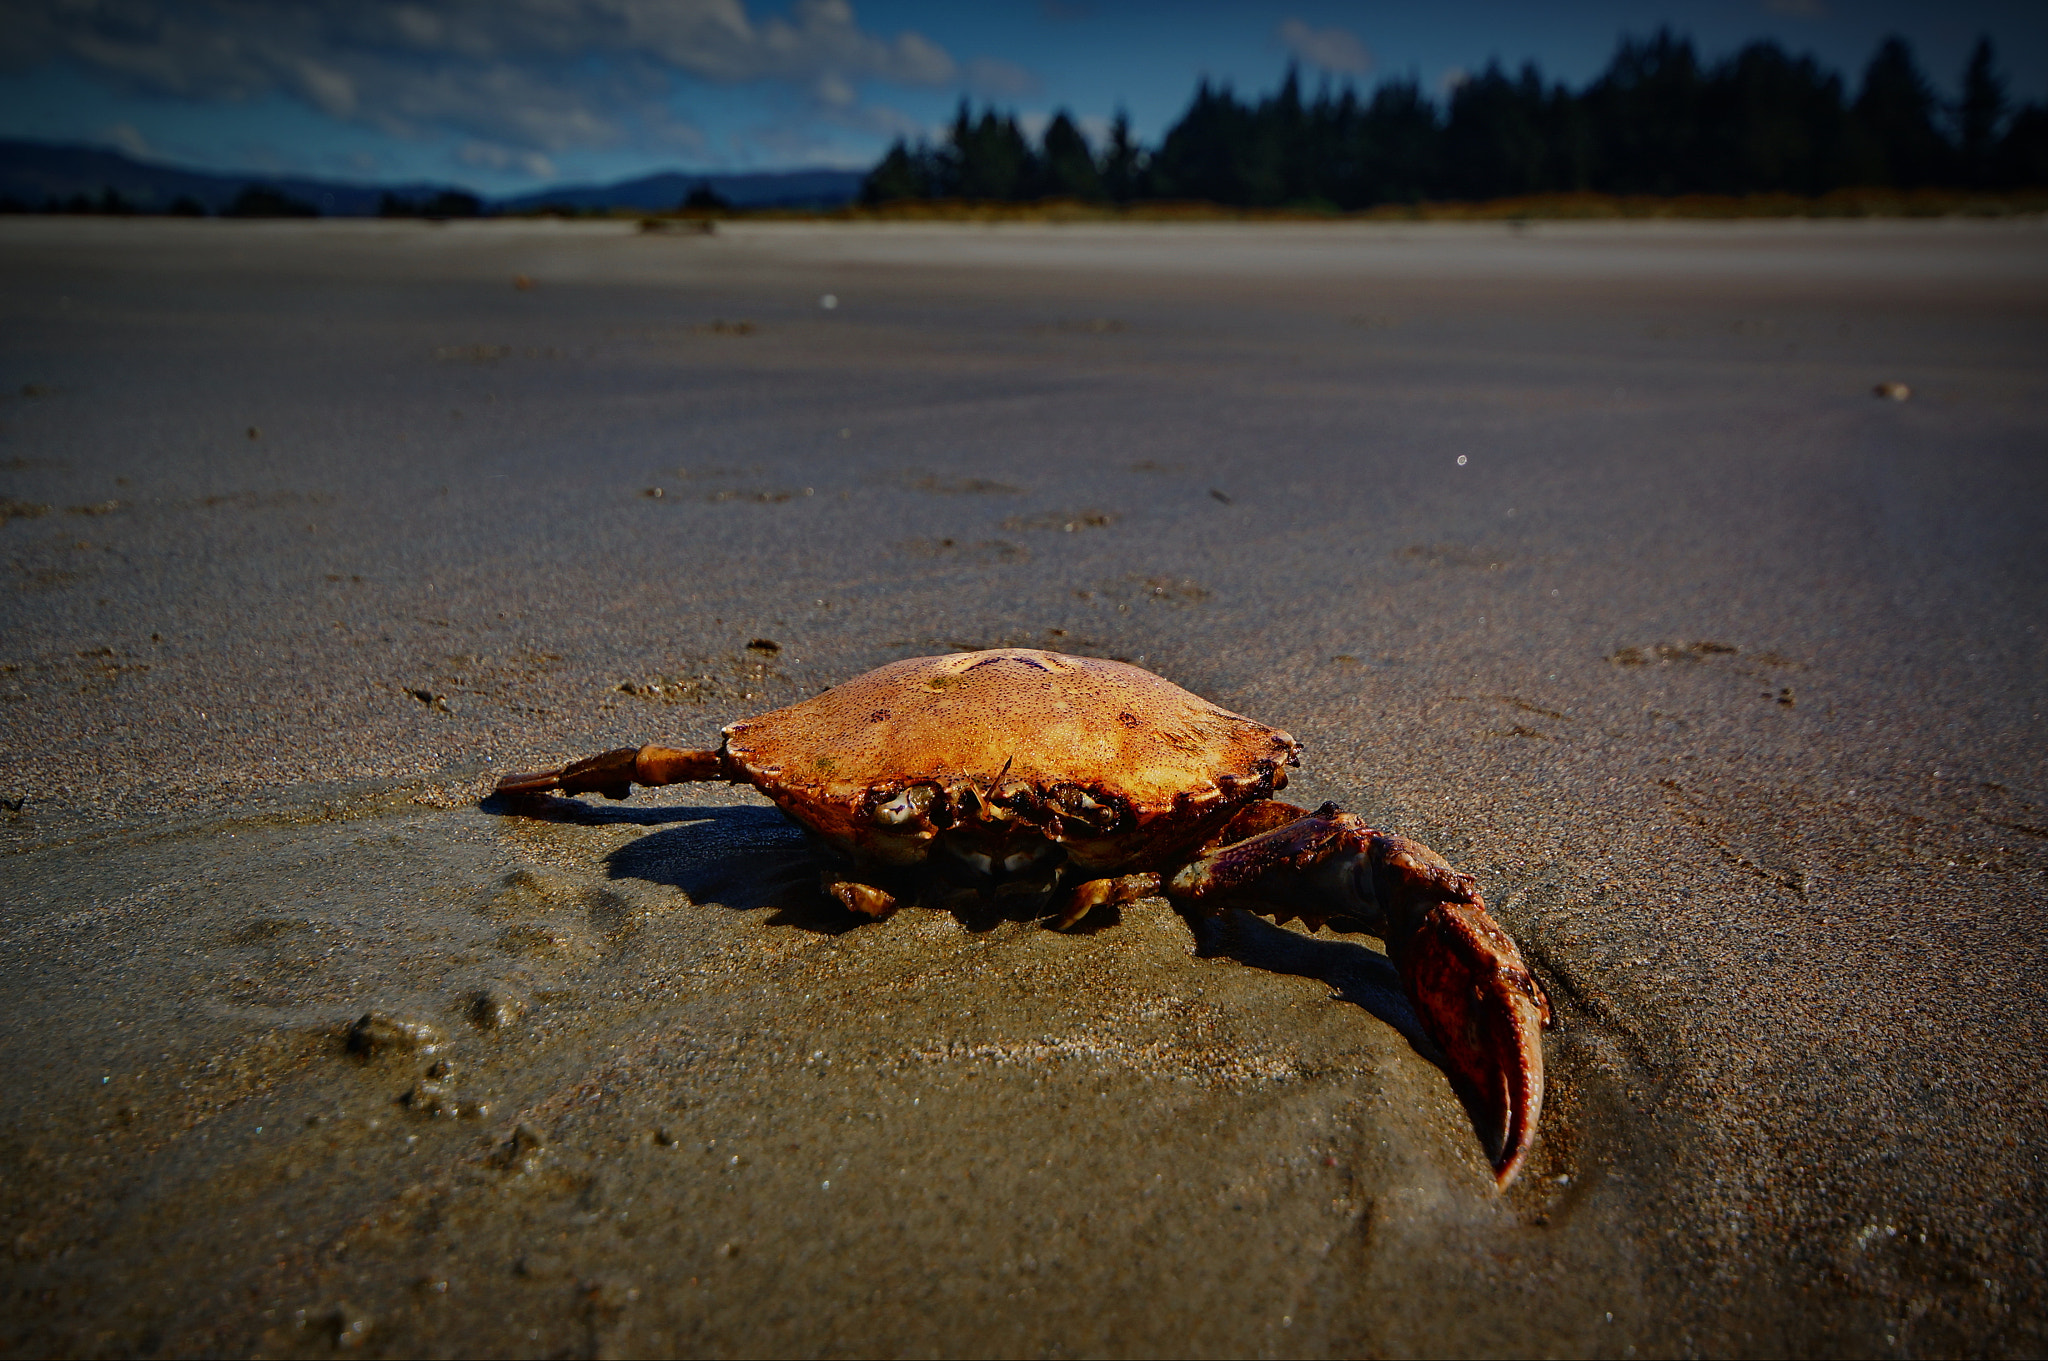 Sony Alpha NEX-5R sample photo. Crab on beach photography